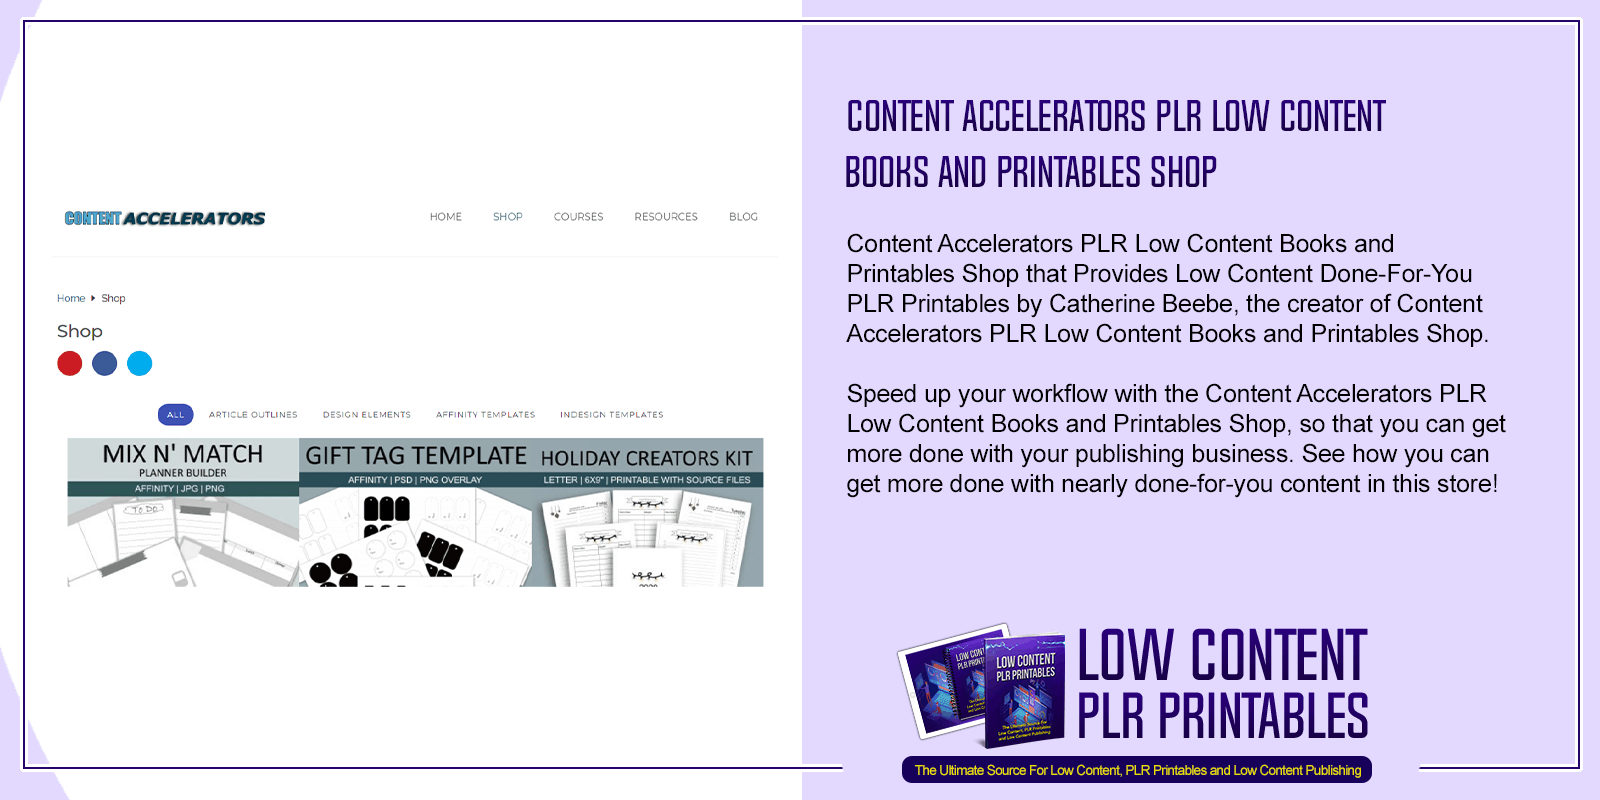 Content Accelerators PLR Low Content Books and Printables Shop